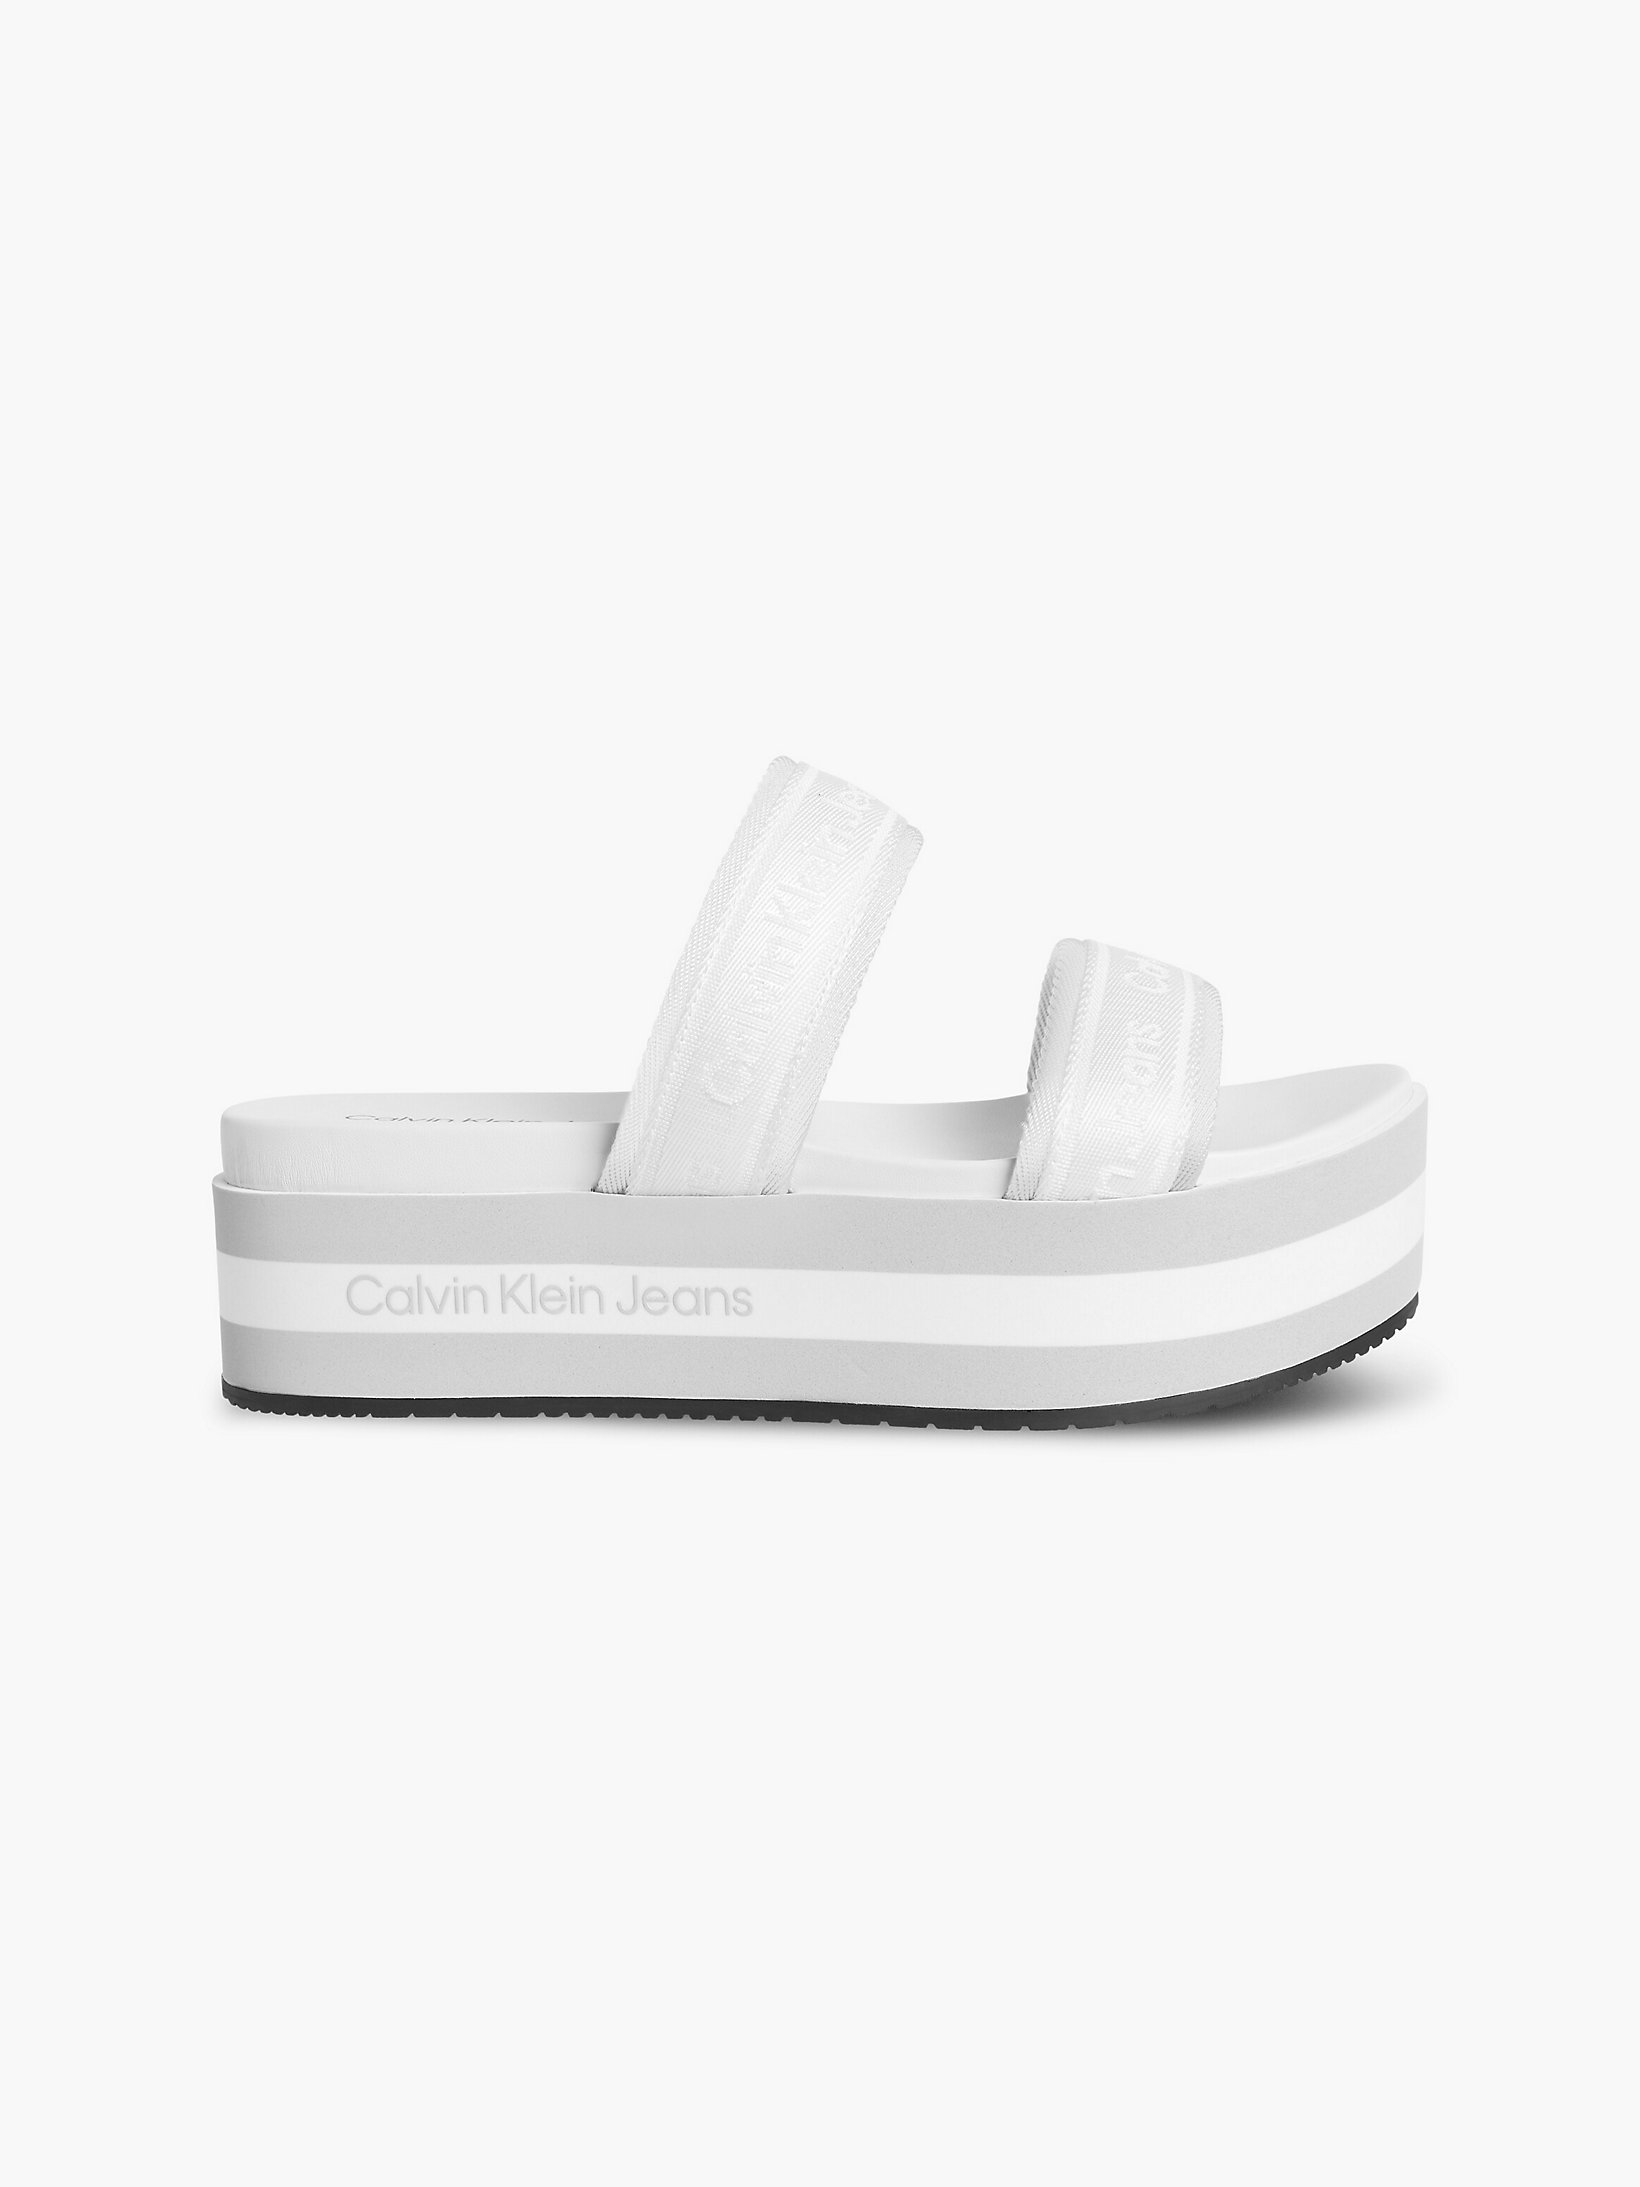 Bright White > Sandały Na Platformie Z Materiałów Z Recyklingu > undefined Kobiety - Calvin Klein